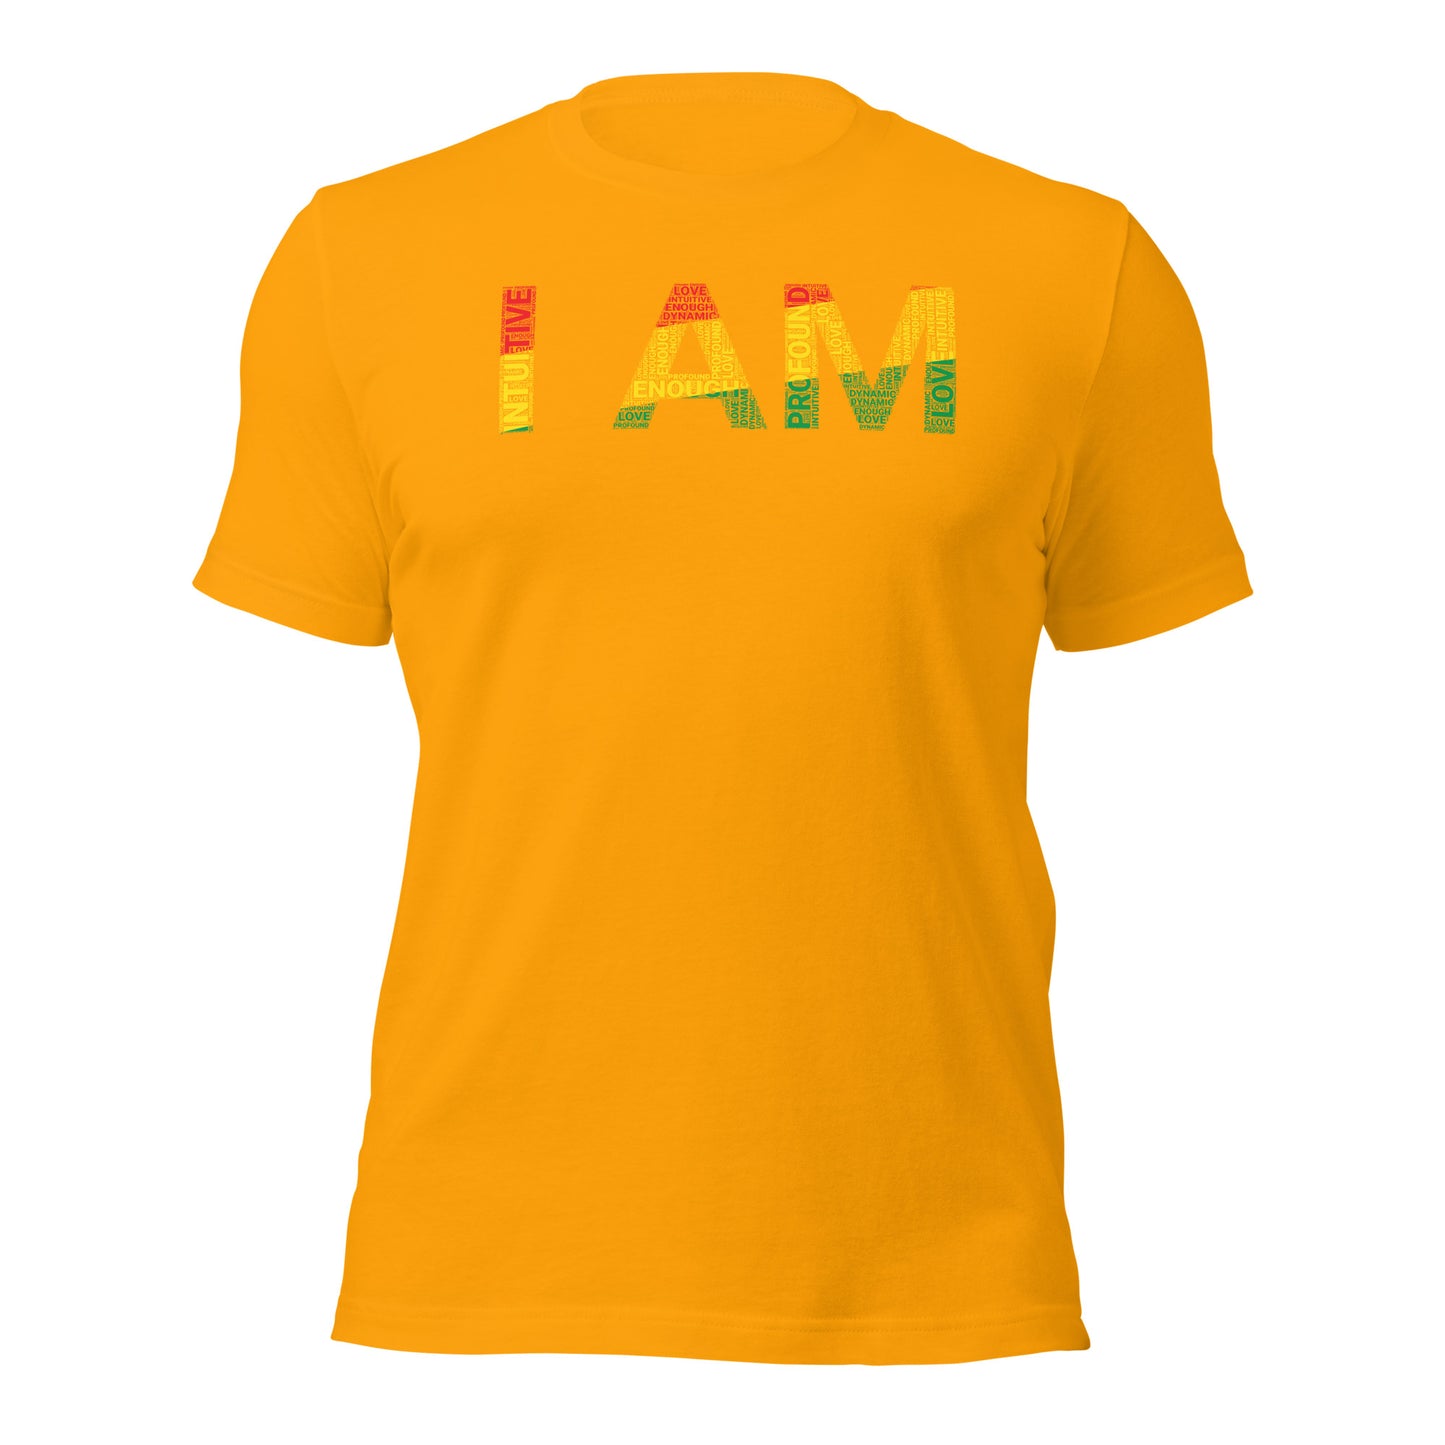 I AM Short-Sleeve Unisex T-Shirt